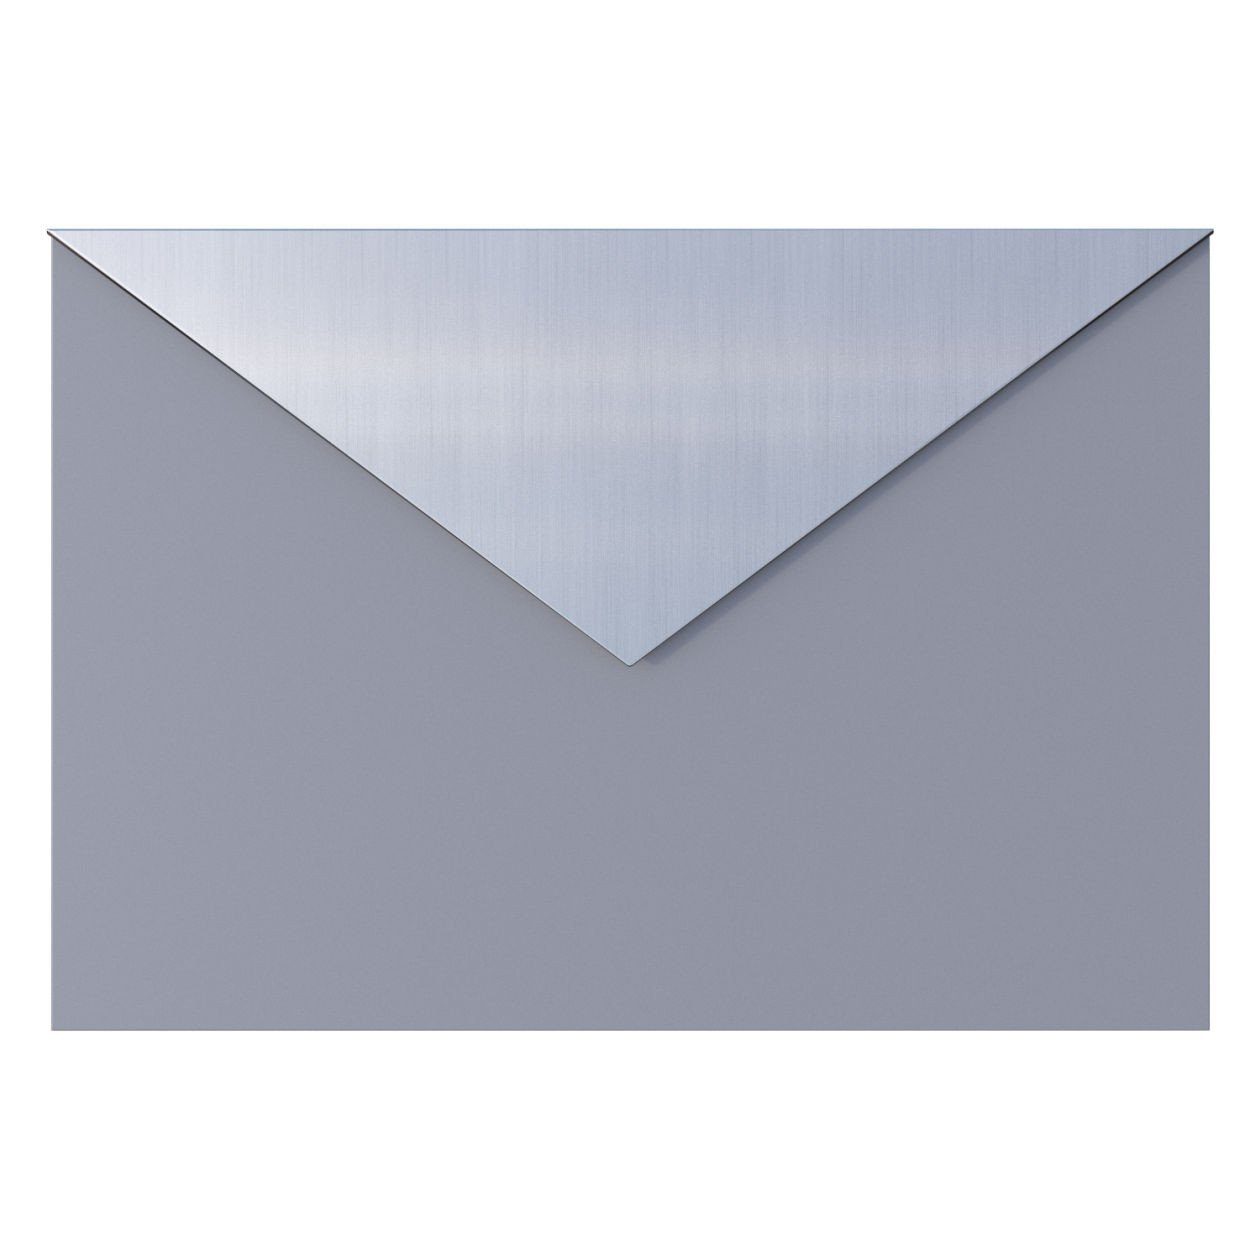 Metallic Grau Briefkasten mit Bravios Briefkasten Letter Edelstahlkla